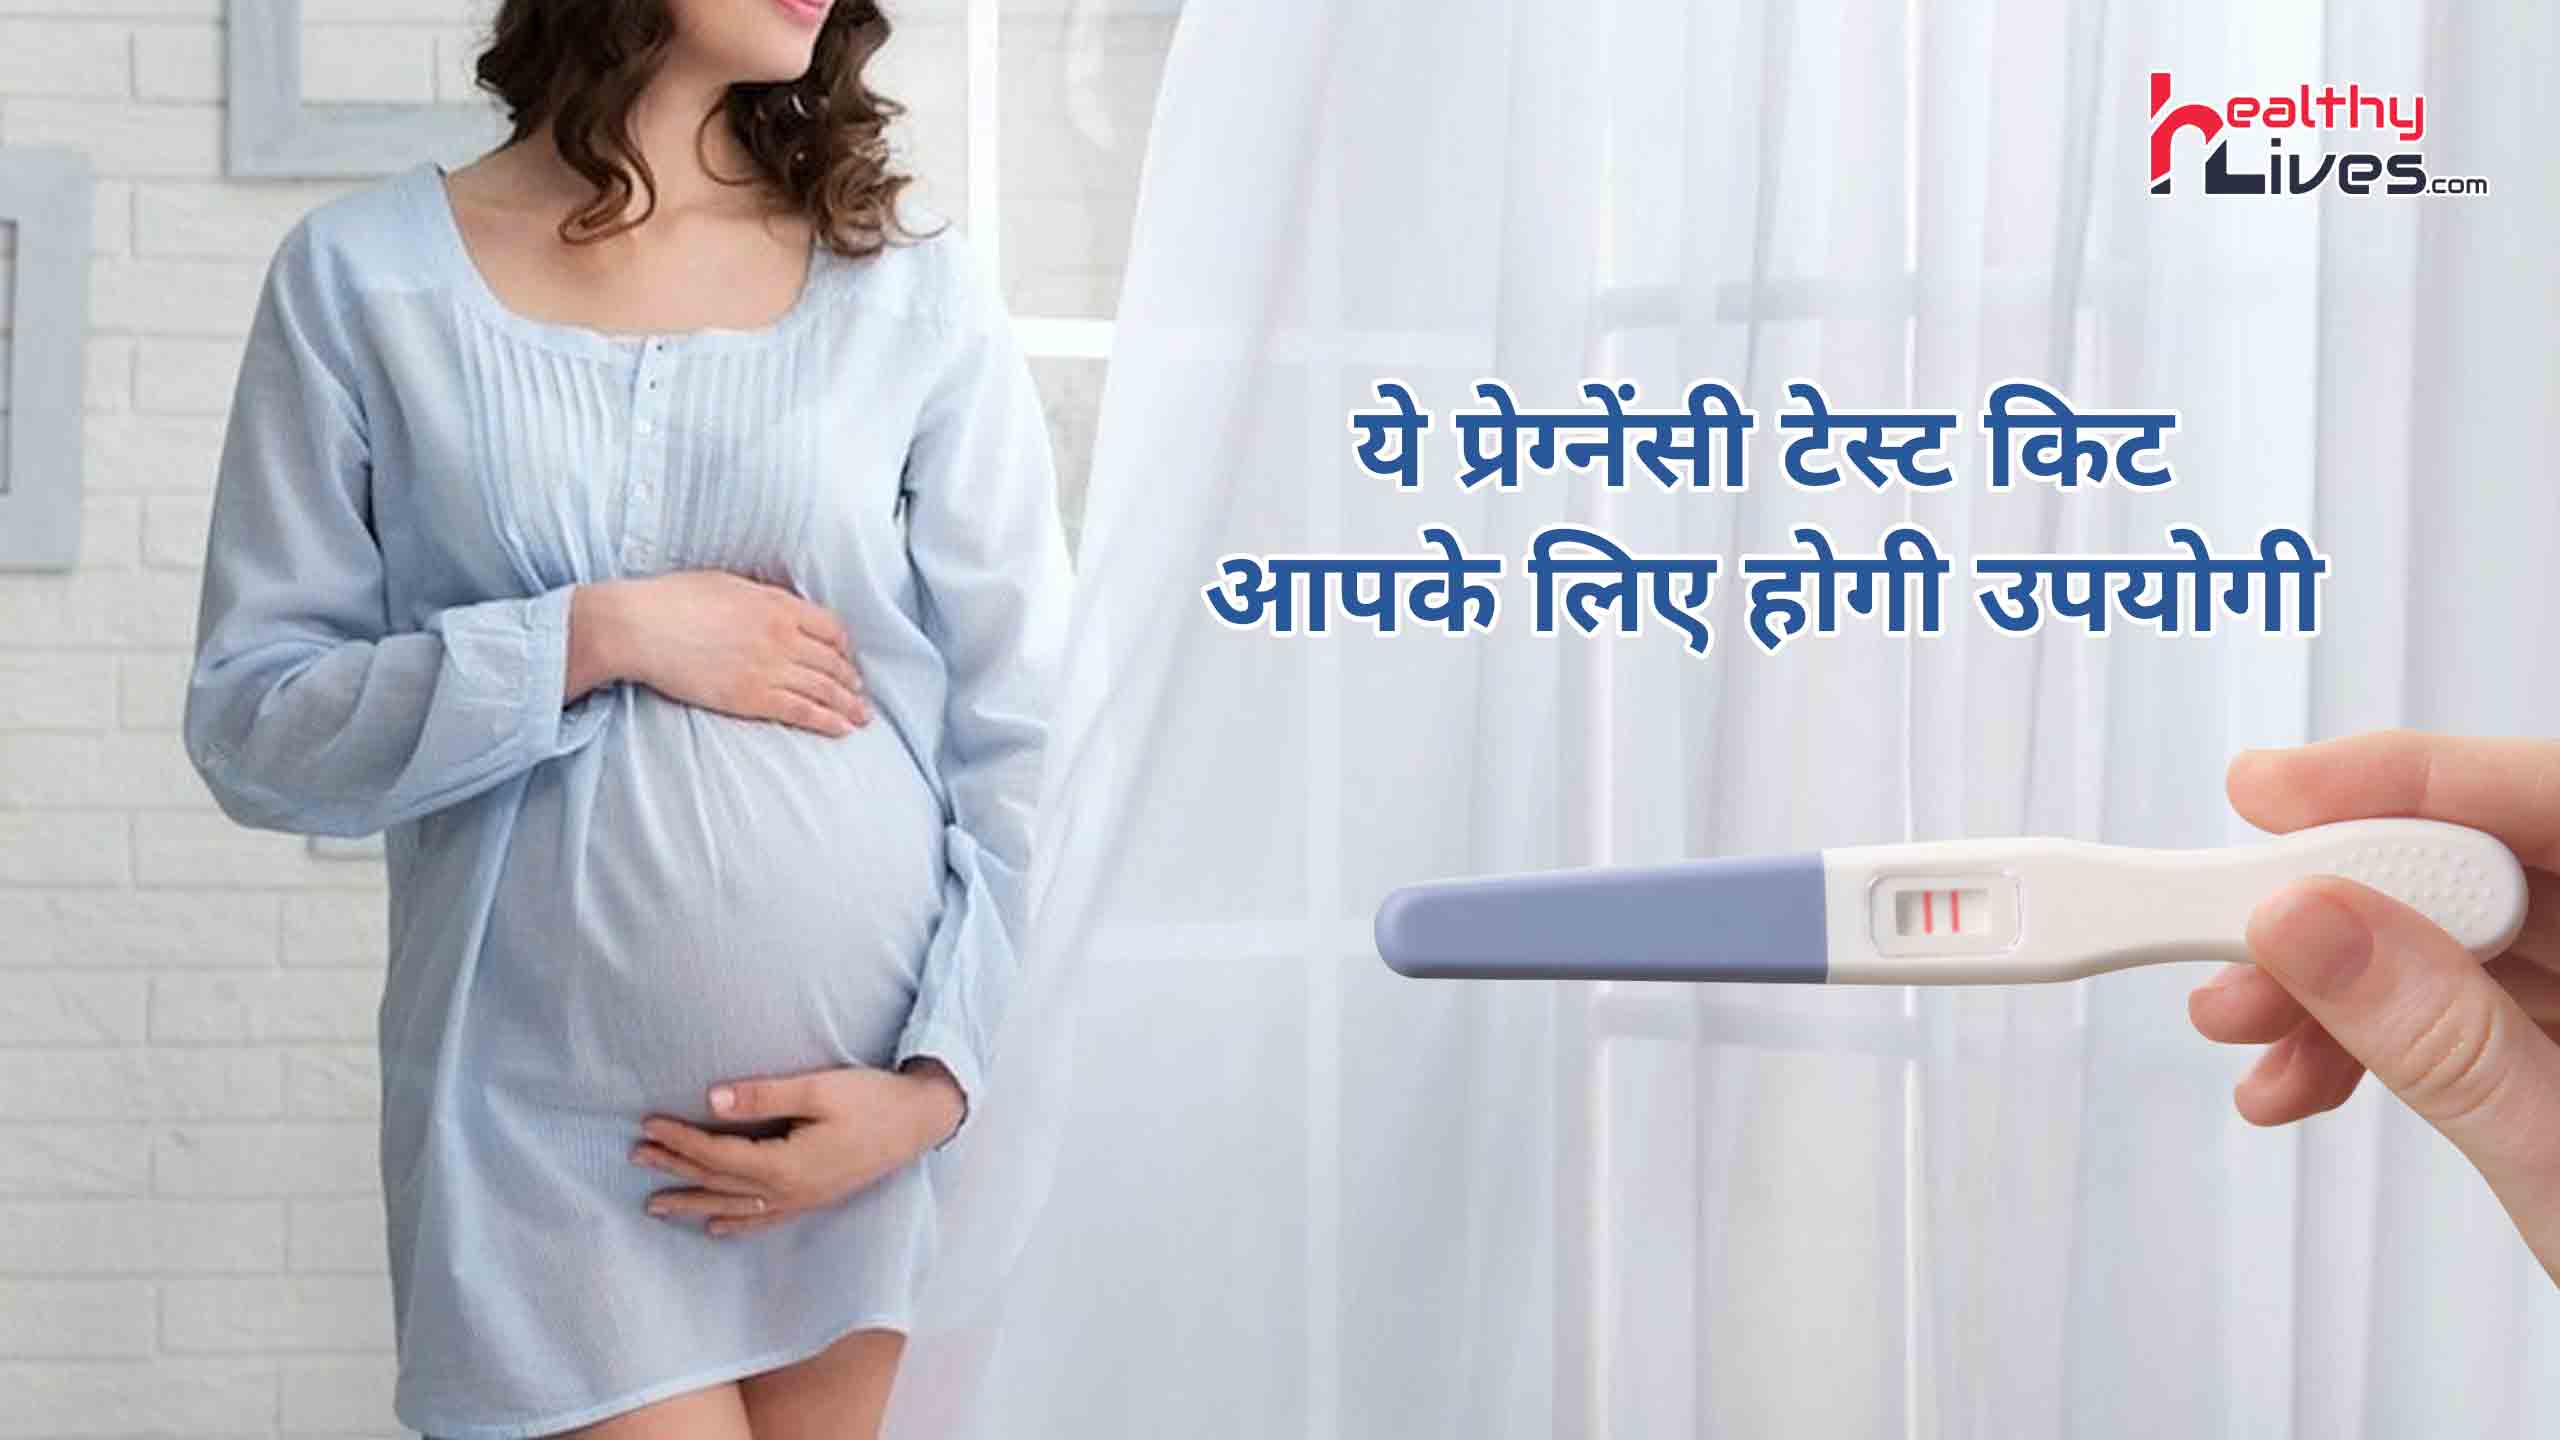 Pregnancy Test Kit Name: टेस्ट द्वारा जाने प्रेग्नेंसी की सही और सटीक जानकारी